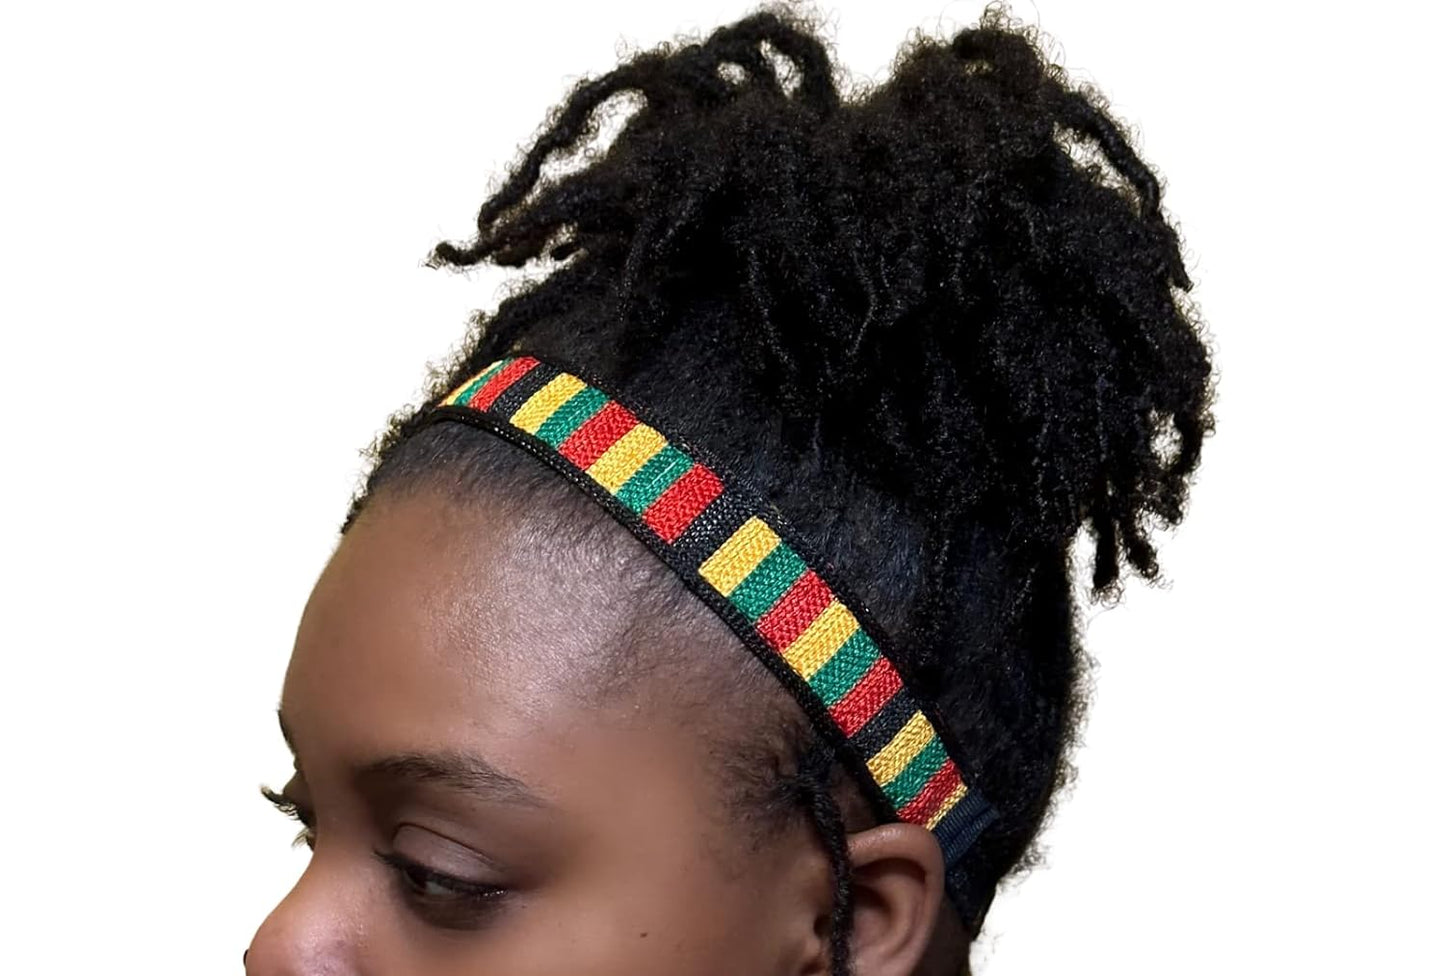 Pan-African Adjustable Headband